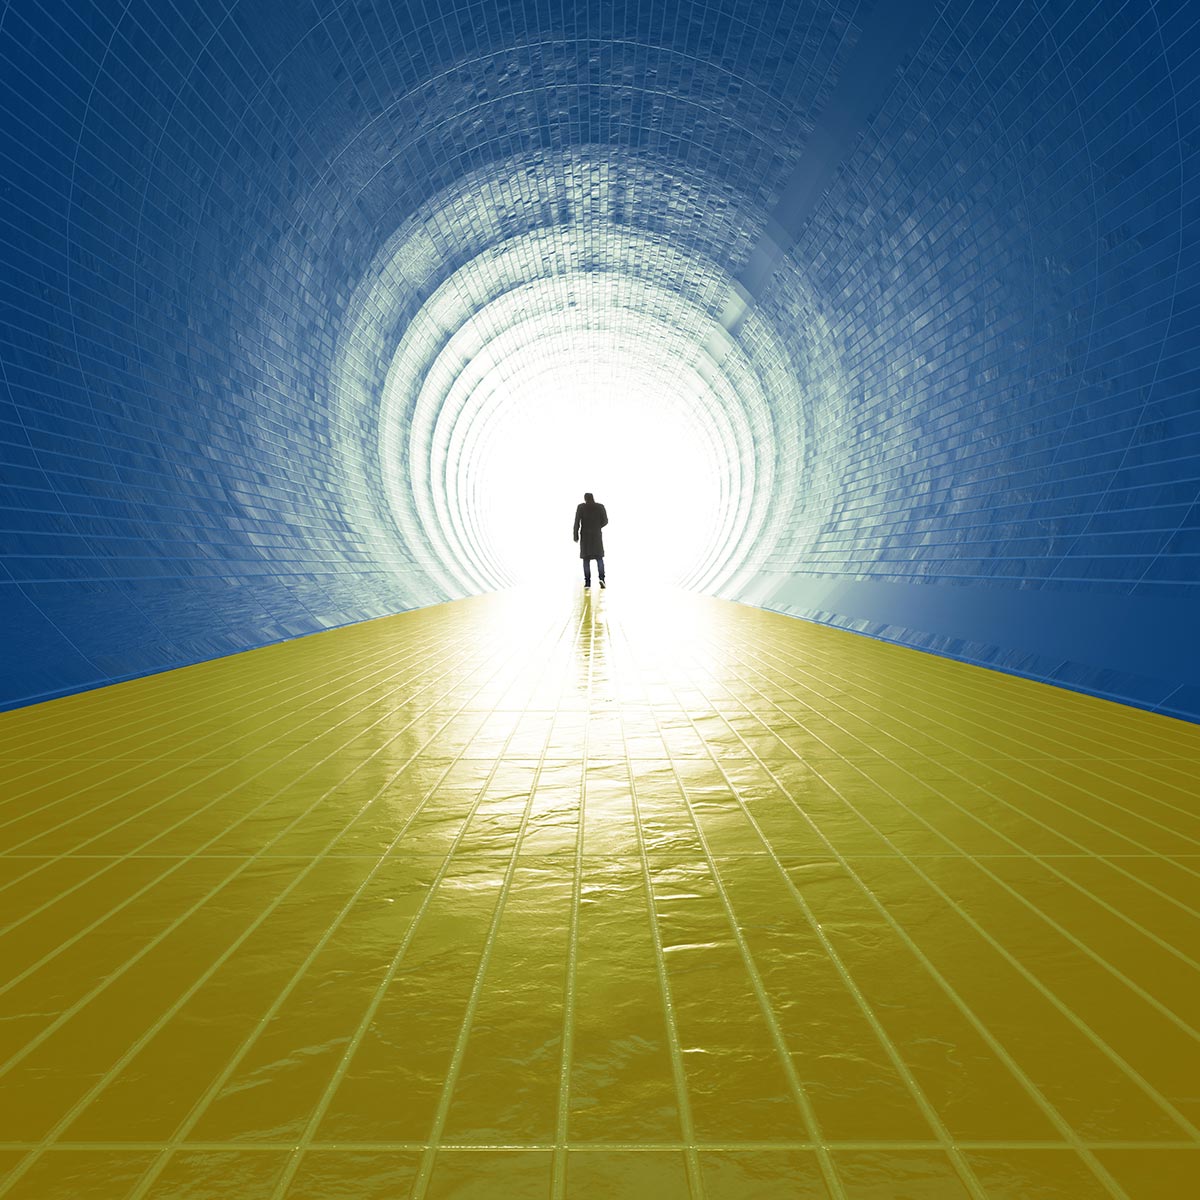 Person am Ende eines Tunnels mit gelbem Boden und blauen Wänden und Decke